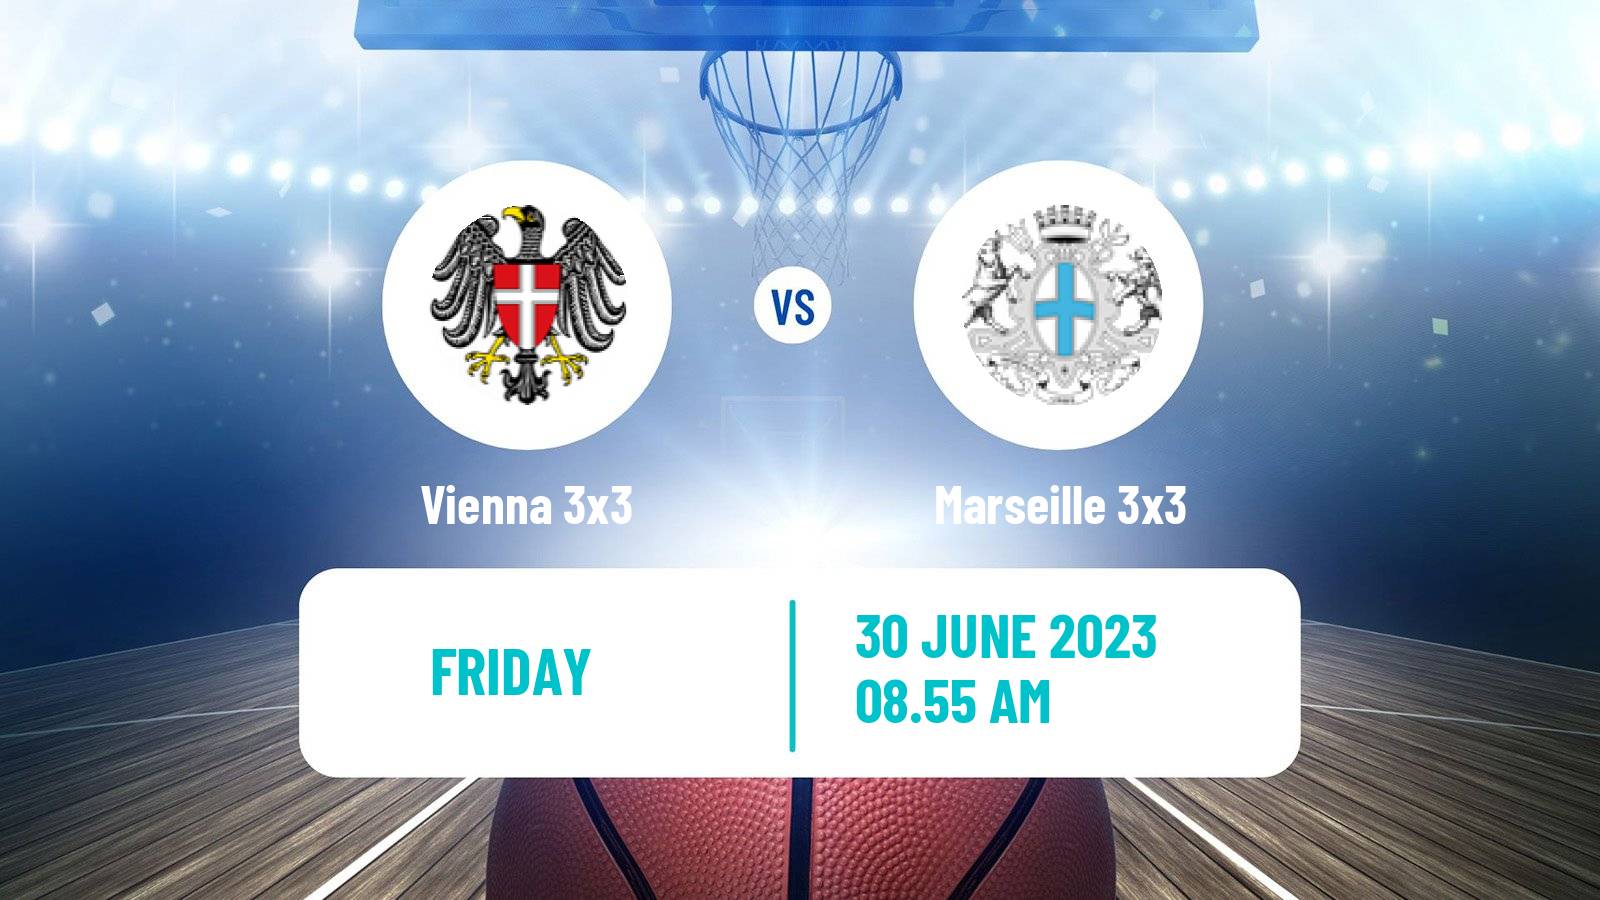 Basketball World Tour Marseille 3x3 Vienna 3x3 - Marseille 3x3